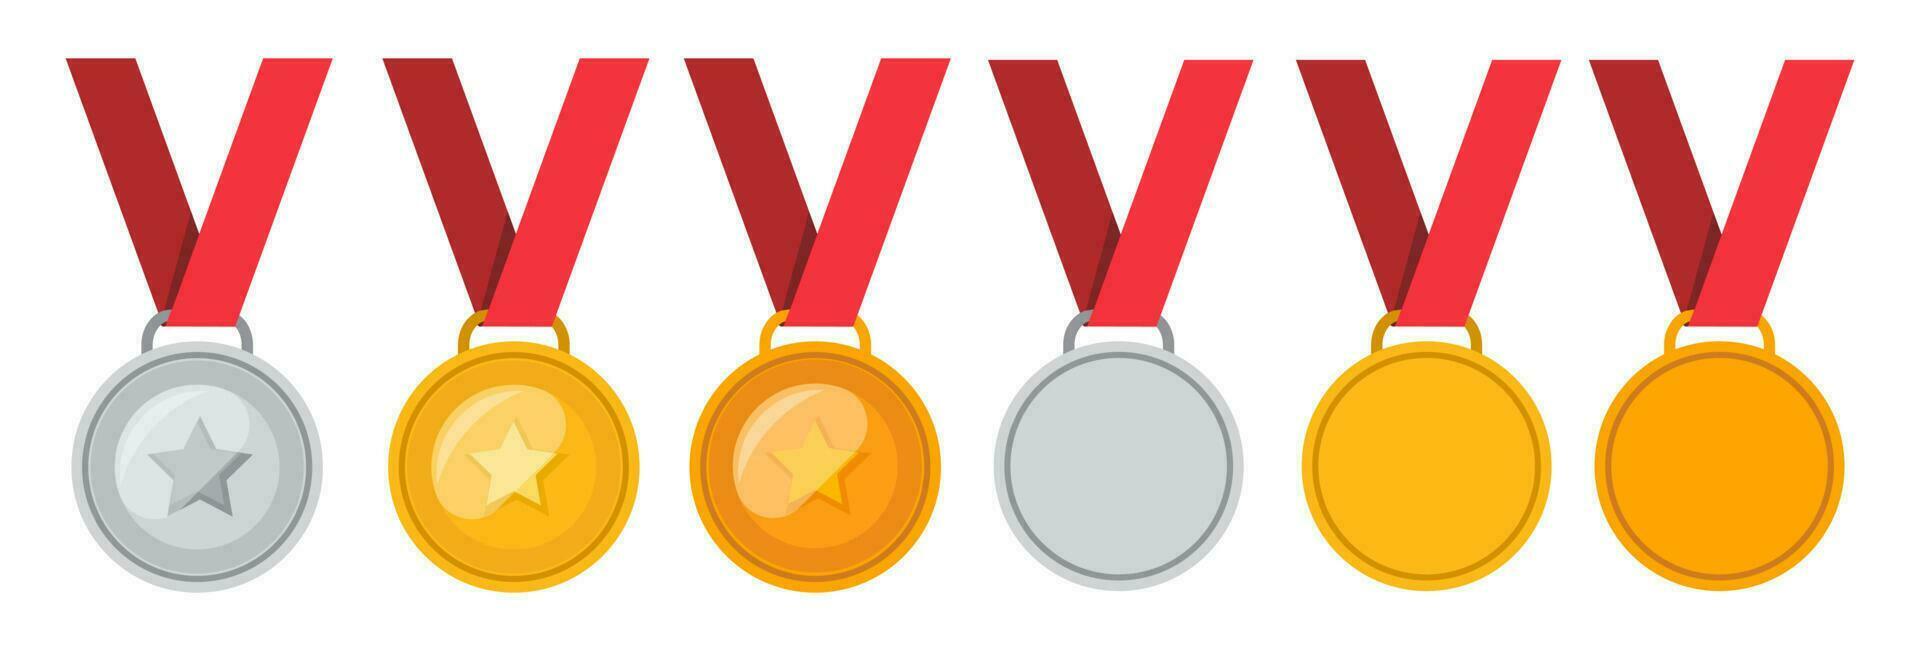 medaglia - oro, argento e bronzo impostare, medaglia con stella. vettore illustrazione